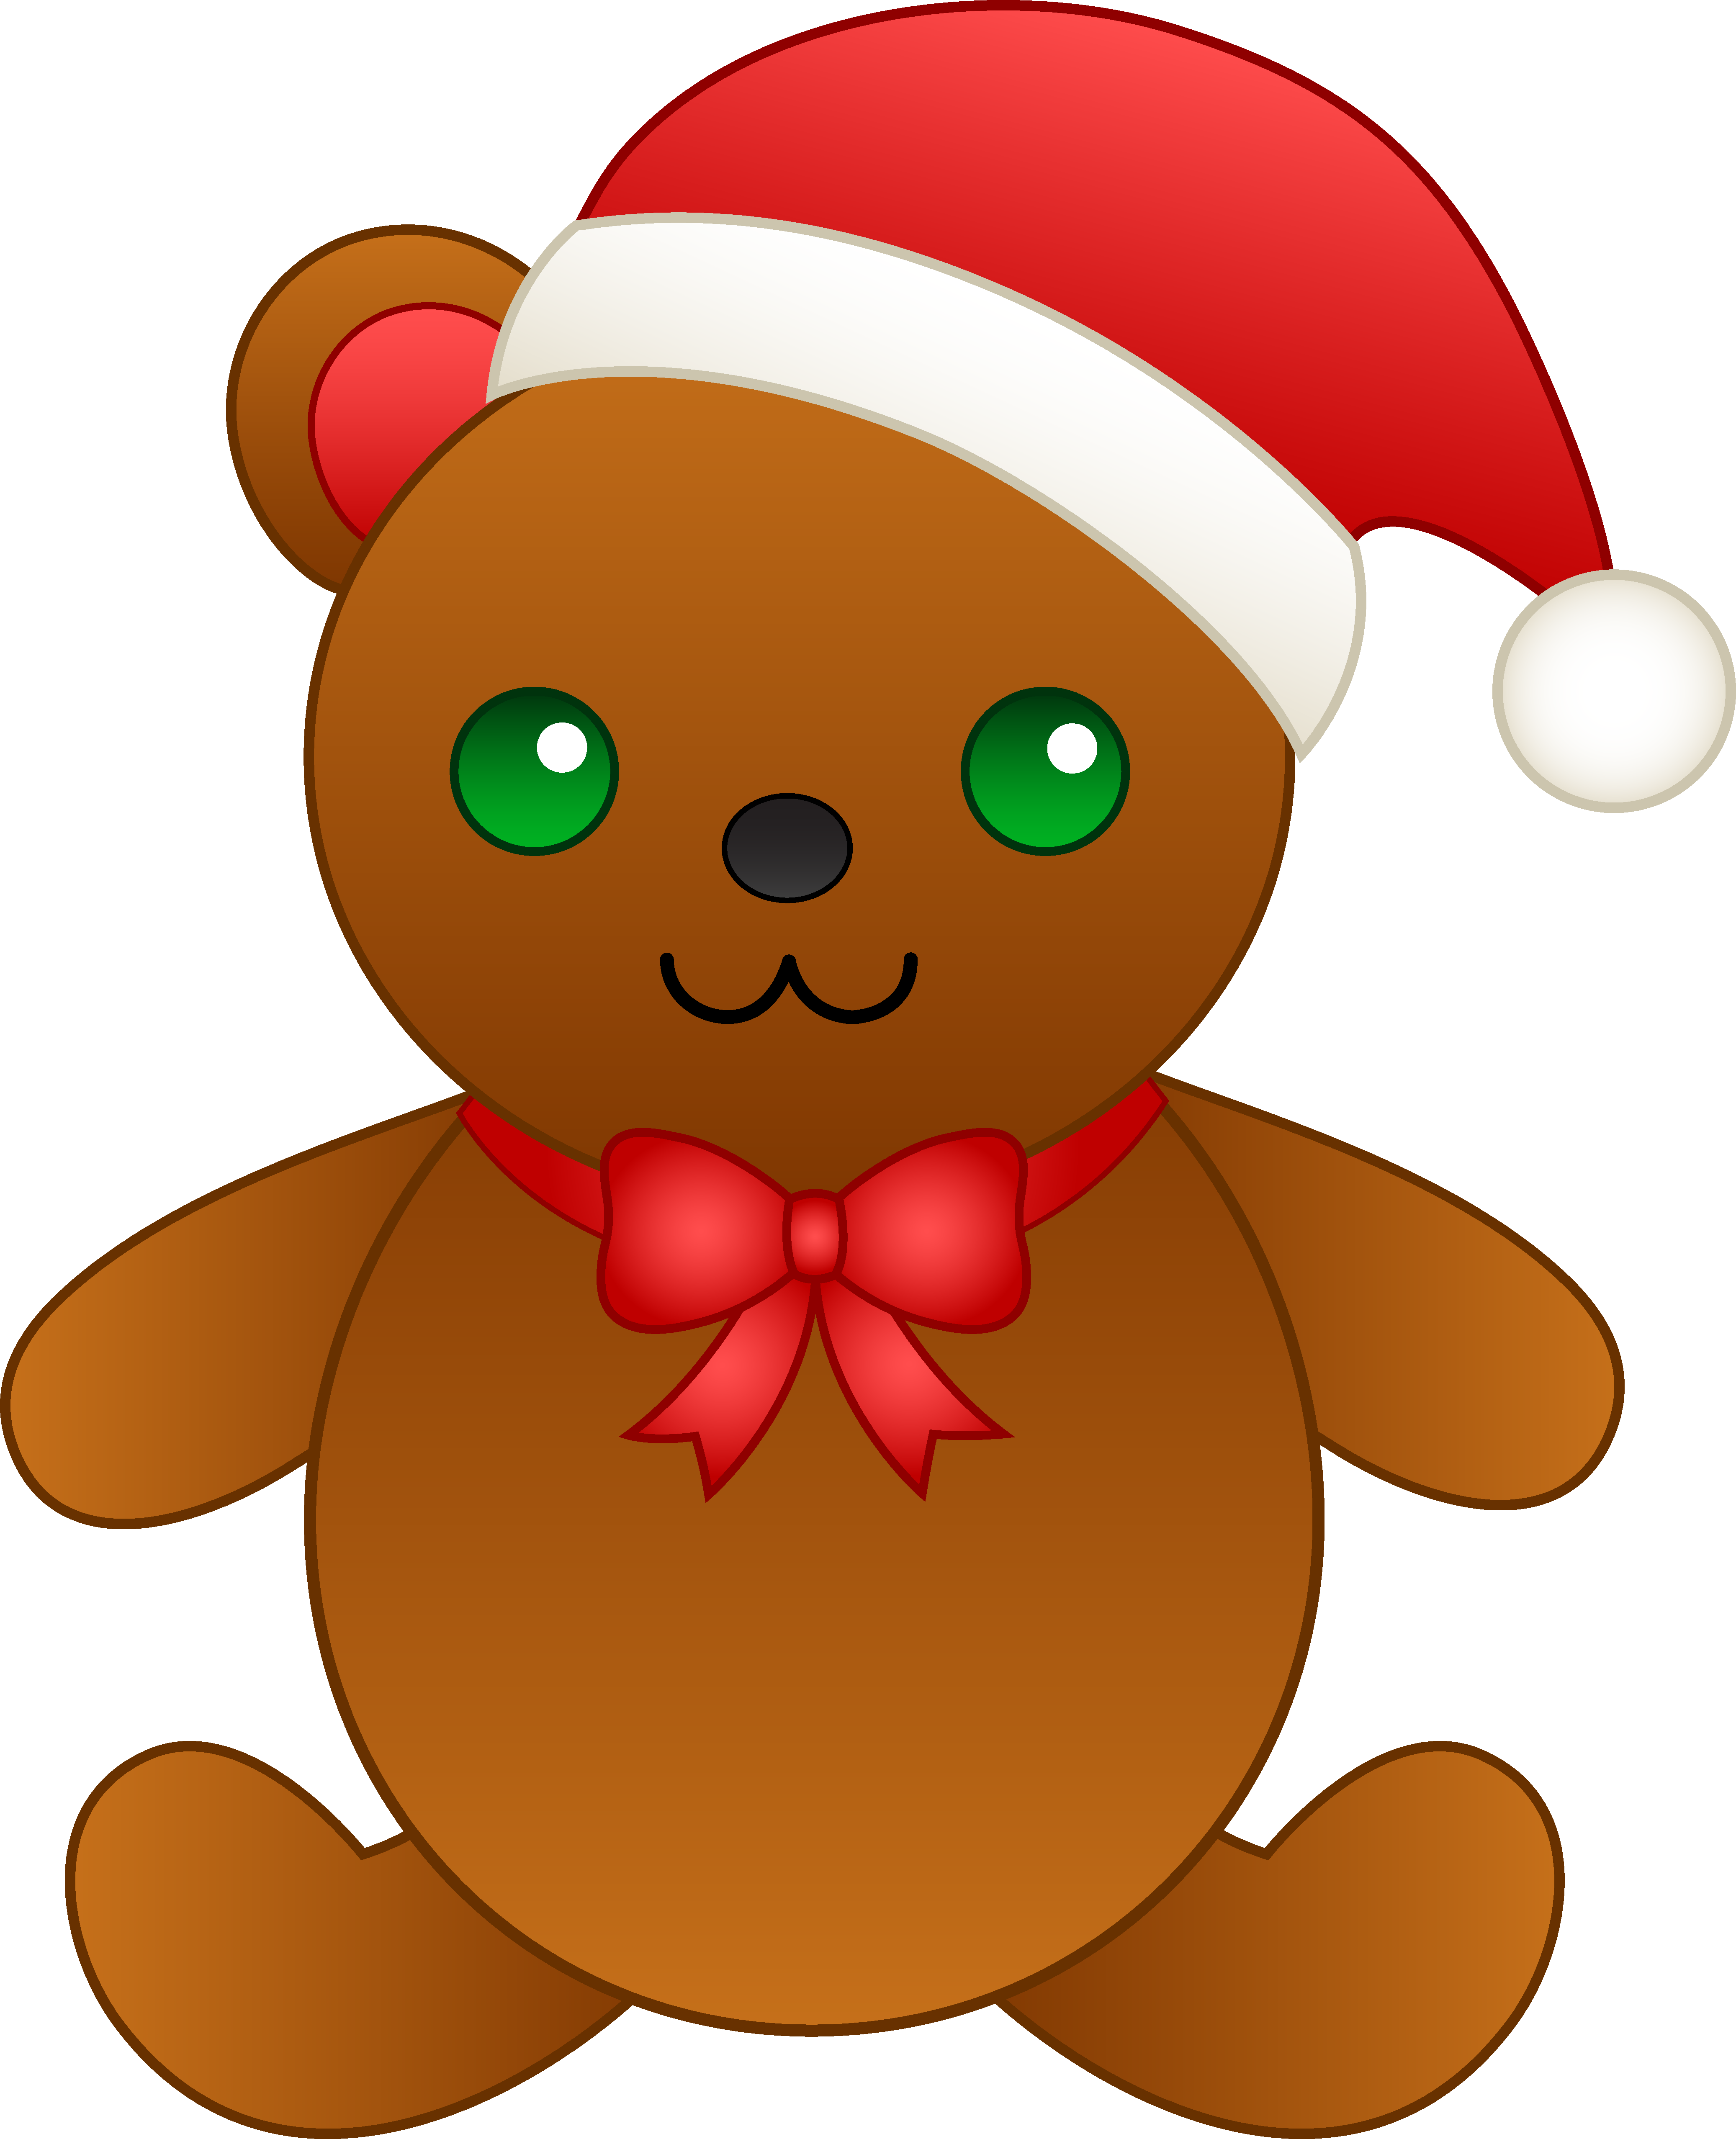 Christmas teddy bear.